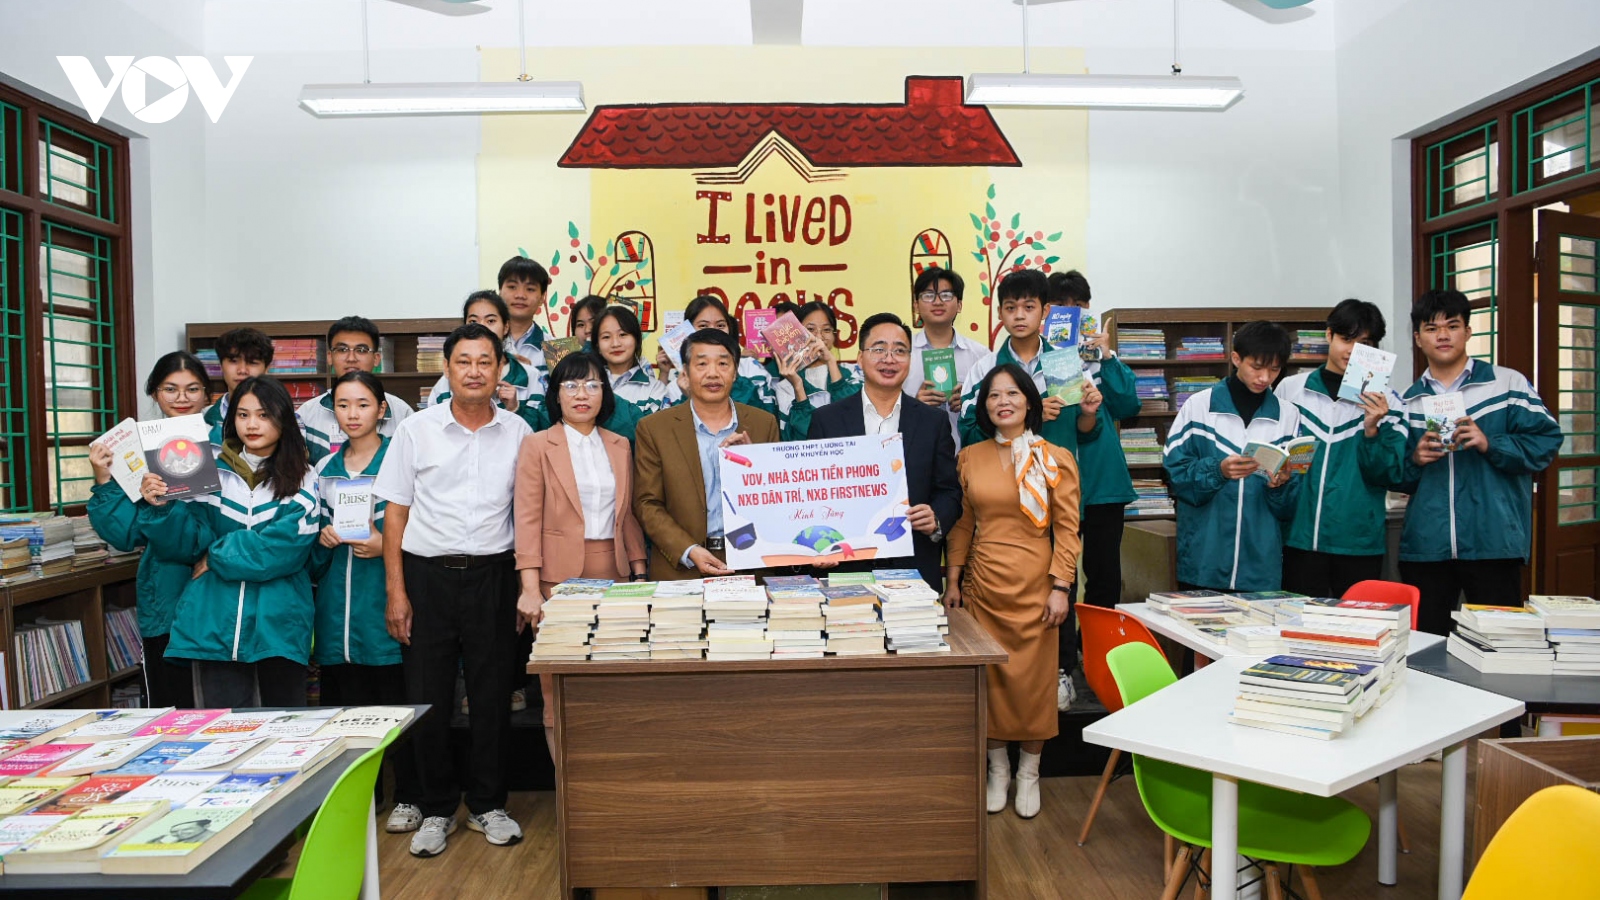  xu vang 777
 cùng các nhà hảo tâm tặng sách cho 2 trường học tại Bắc Ninh